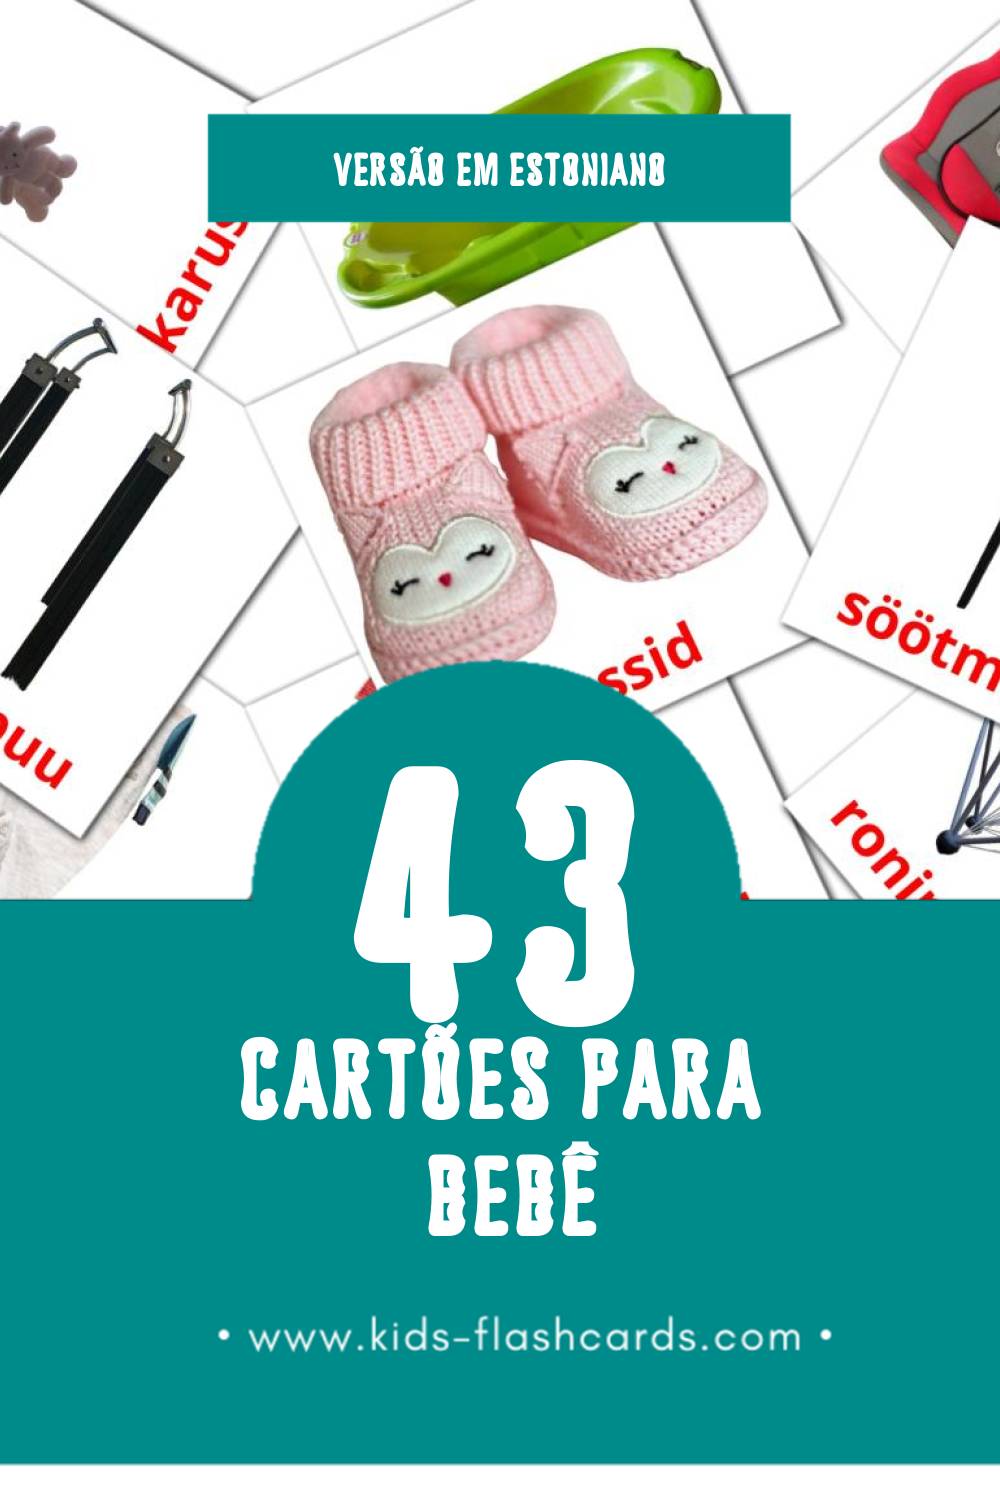 Flashcards de Beebi Visuais para Toddlers (43 cartões em Estoniano)